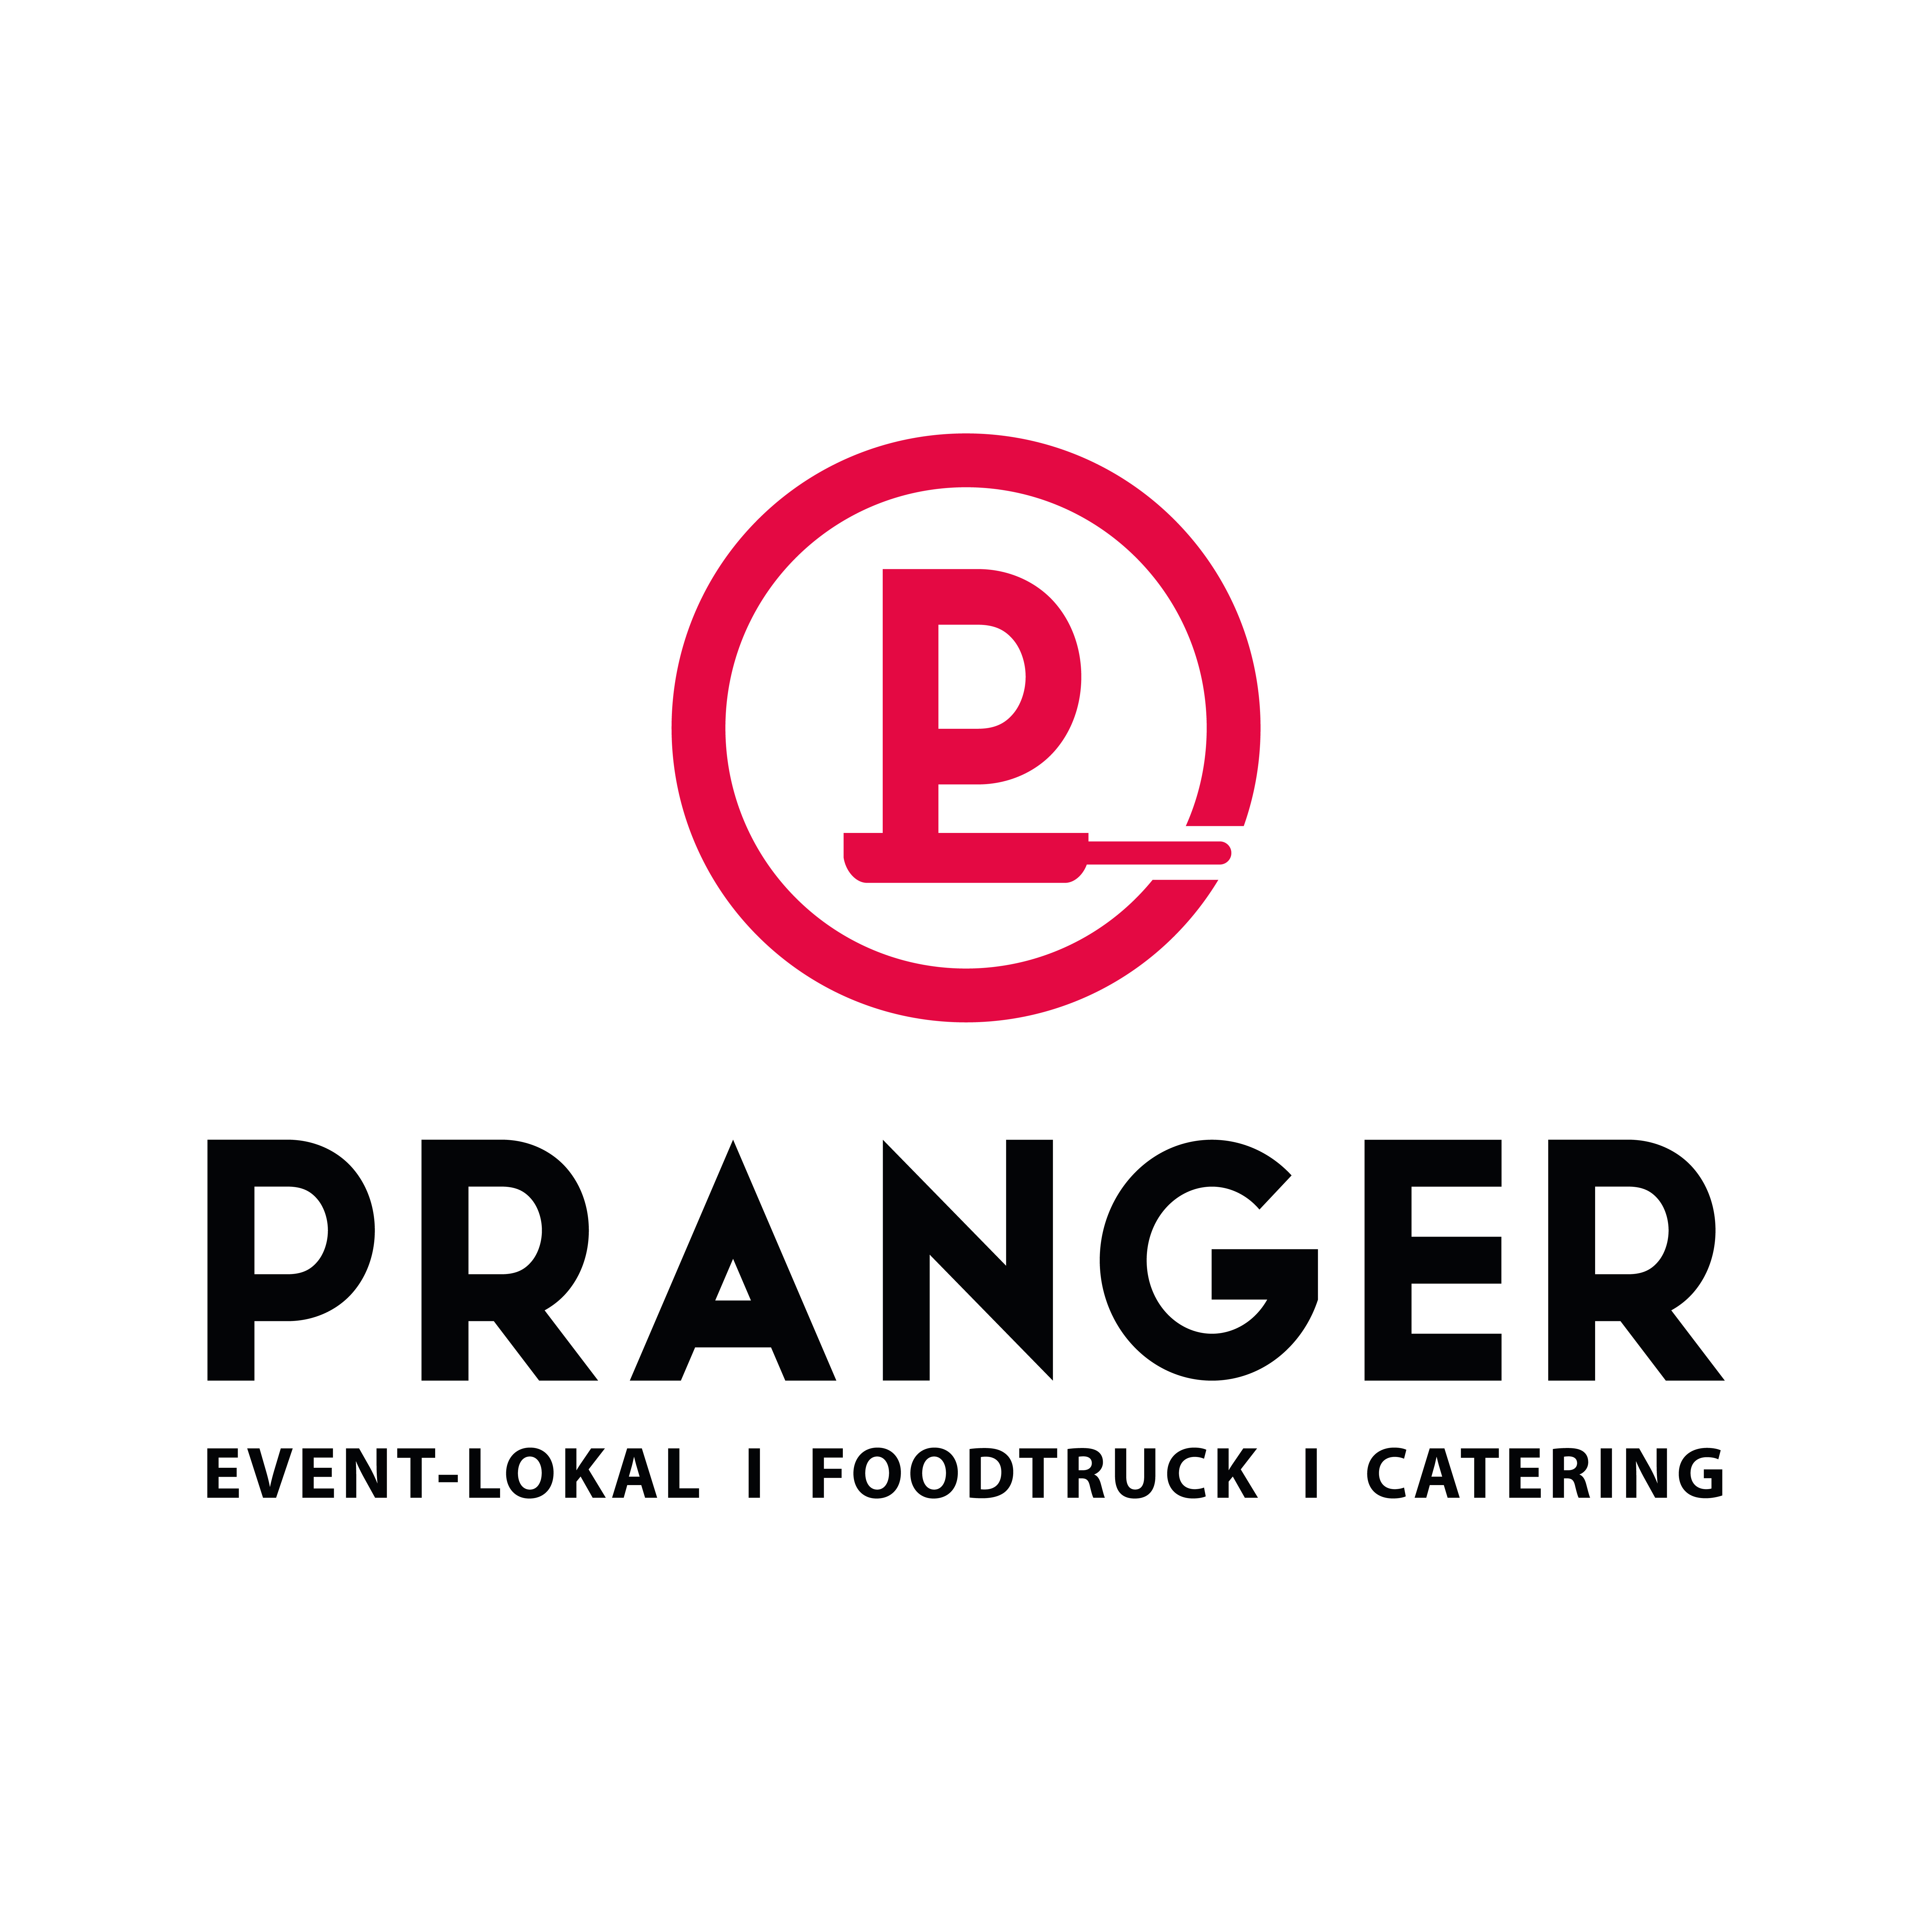 PRANGER Event-Lokal | Foodtruck | Catering Logo